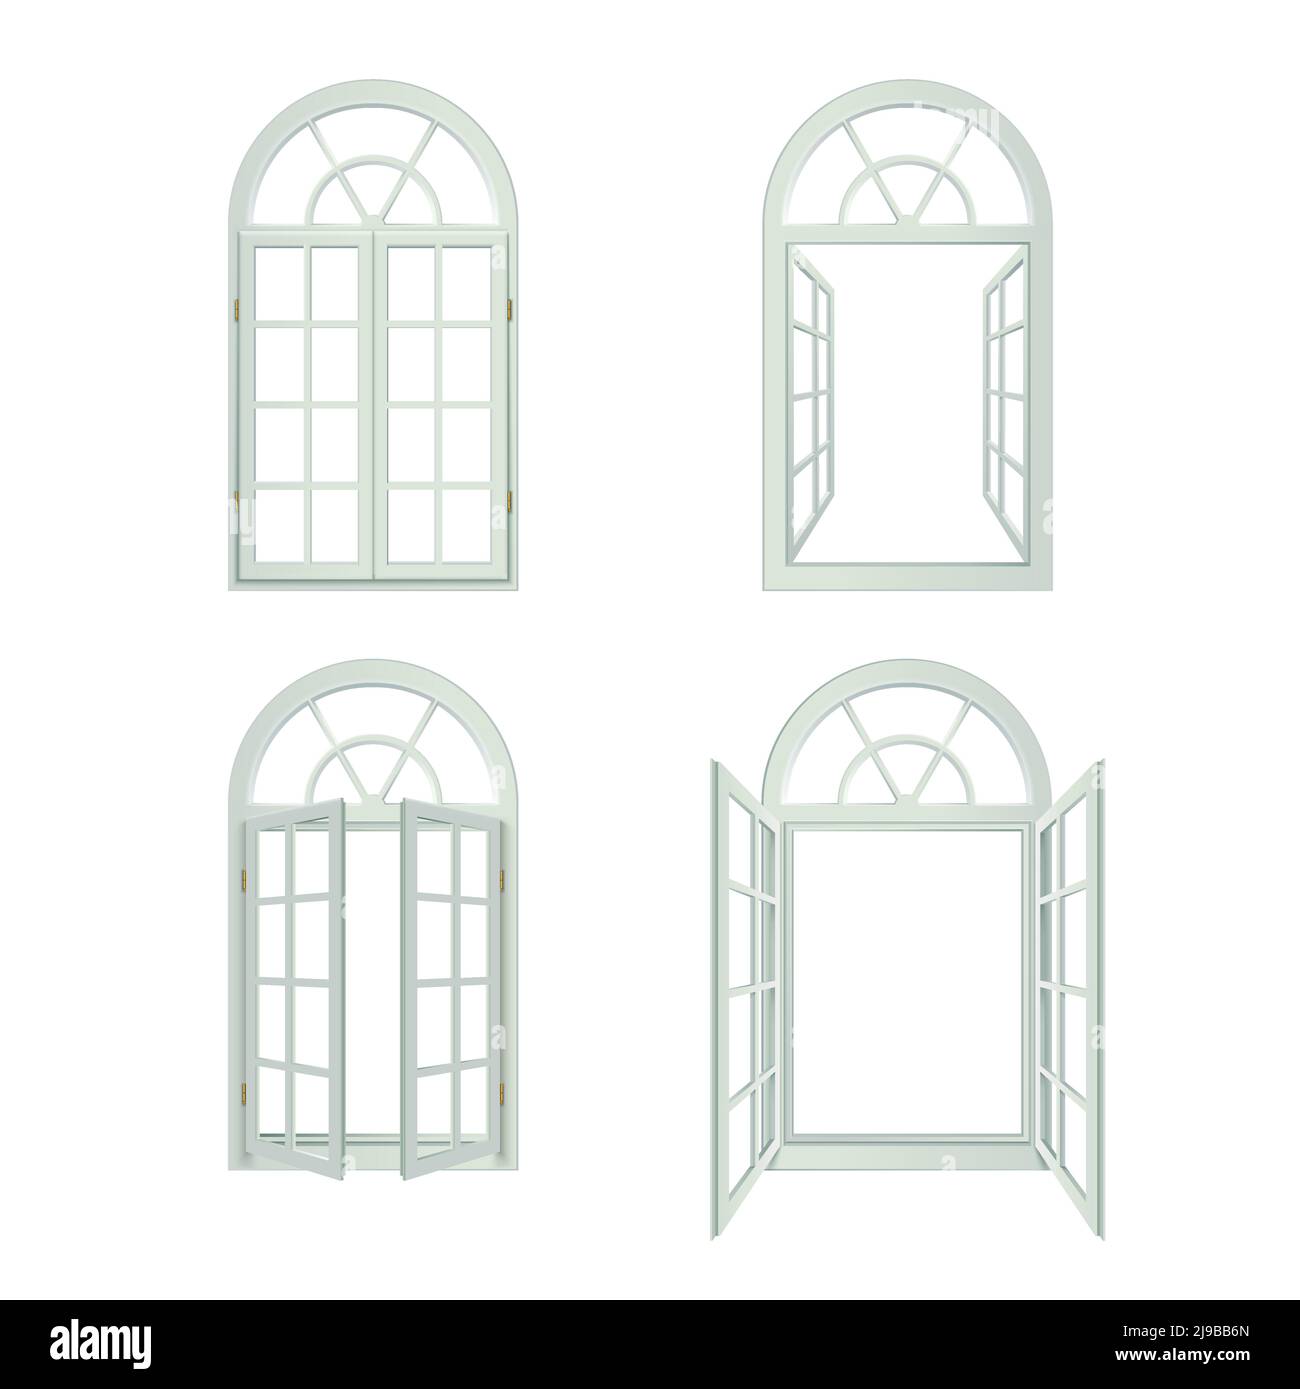 Windows-Bogensymbole Gesetzt. Bogenfenster Vektorgrafik.Bogenfenster Dekoratives Set. Windows-Designsatz Mit Bogenmuster. Bogenfenster Realistische Isola Stock Vektor